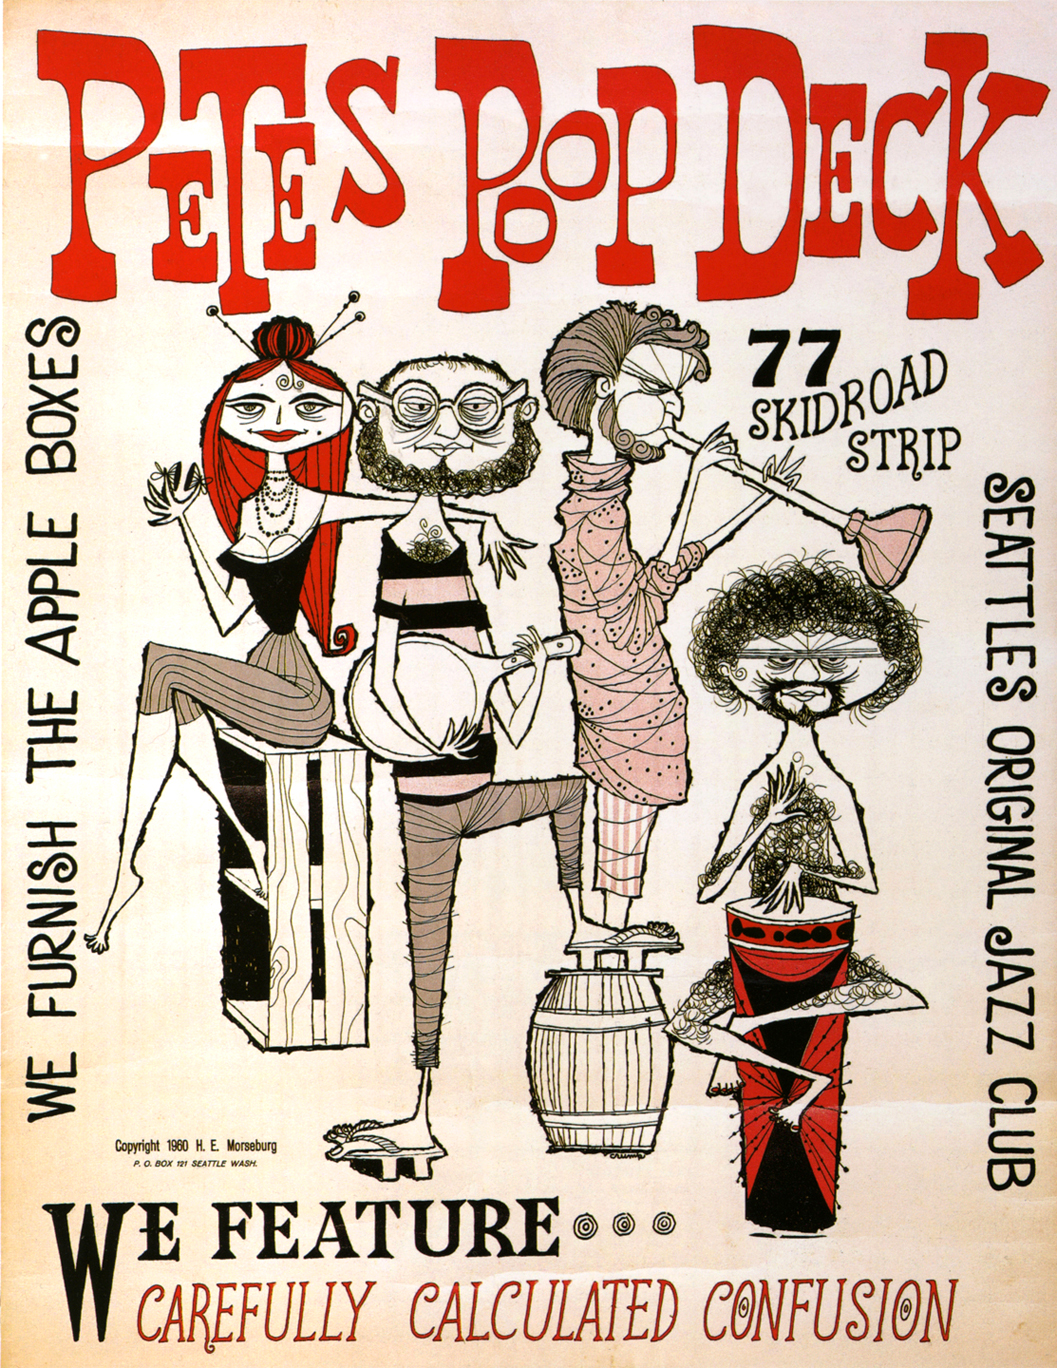 http://4.bp.blogspot.com/-yomGVokwn60/Tqr-WU8fOJI/AAAAAAAAE0c/IBD6mhfALHM/s1600/Roland-Crump-petes-poop-deck-jazz-club-1960-KK.jpg